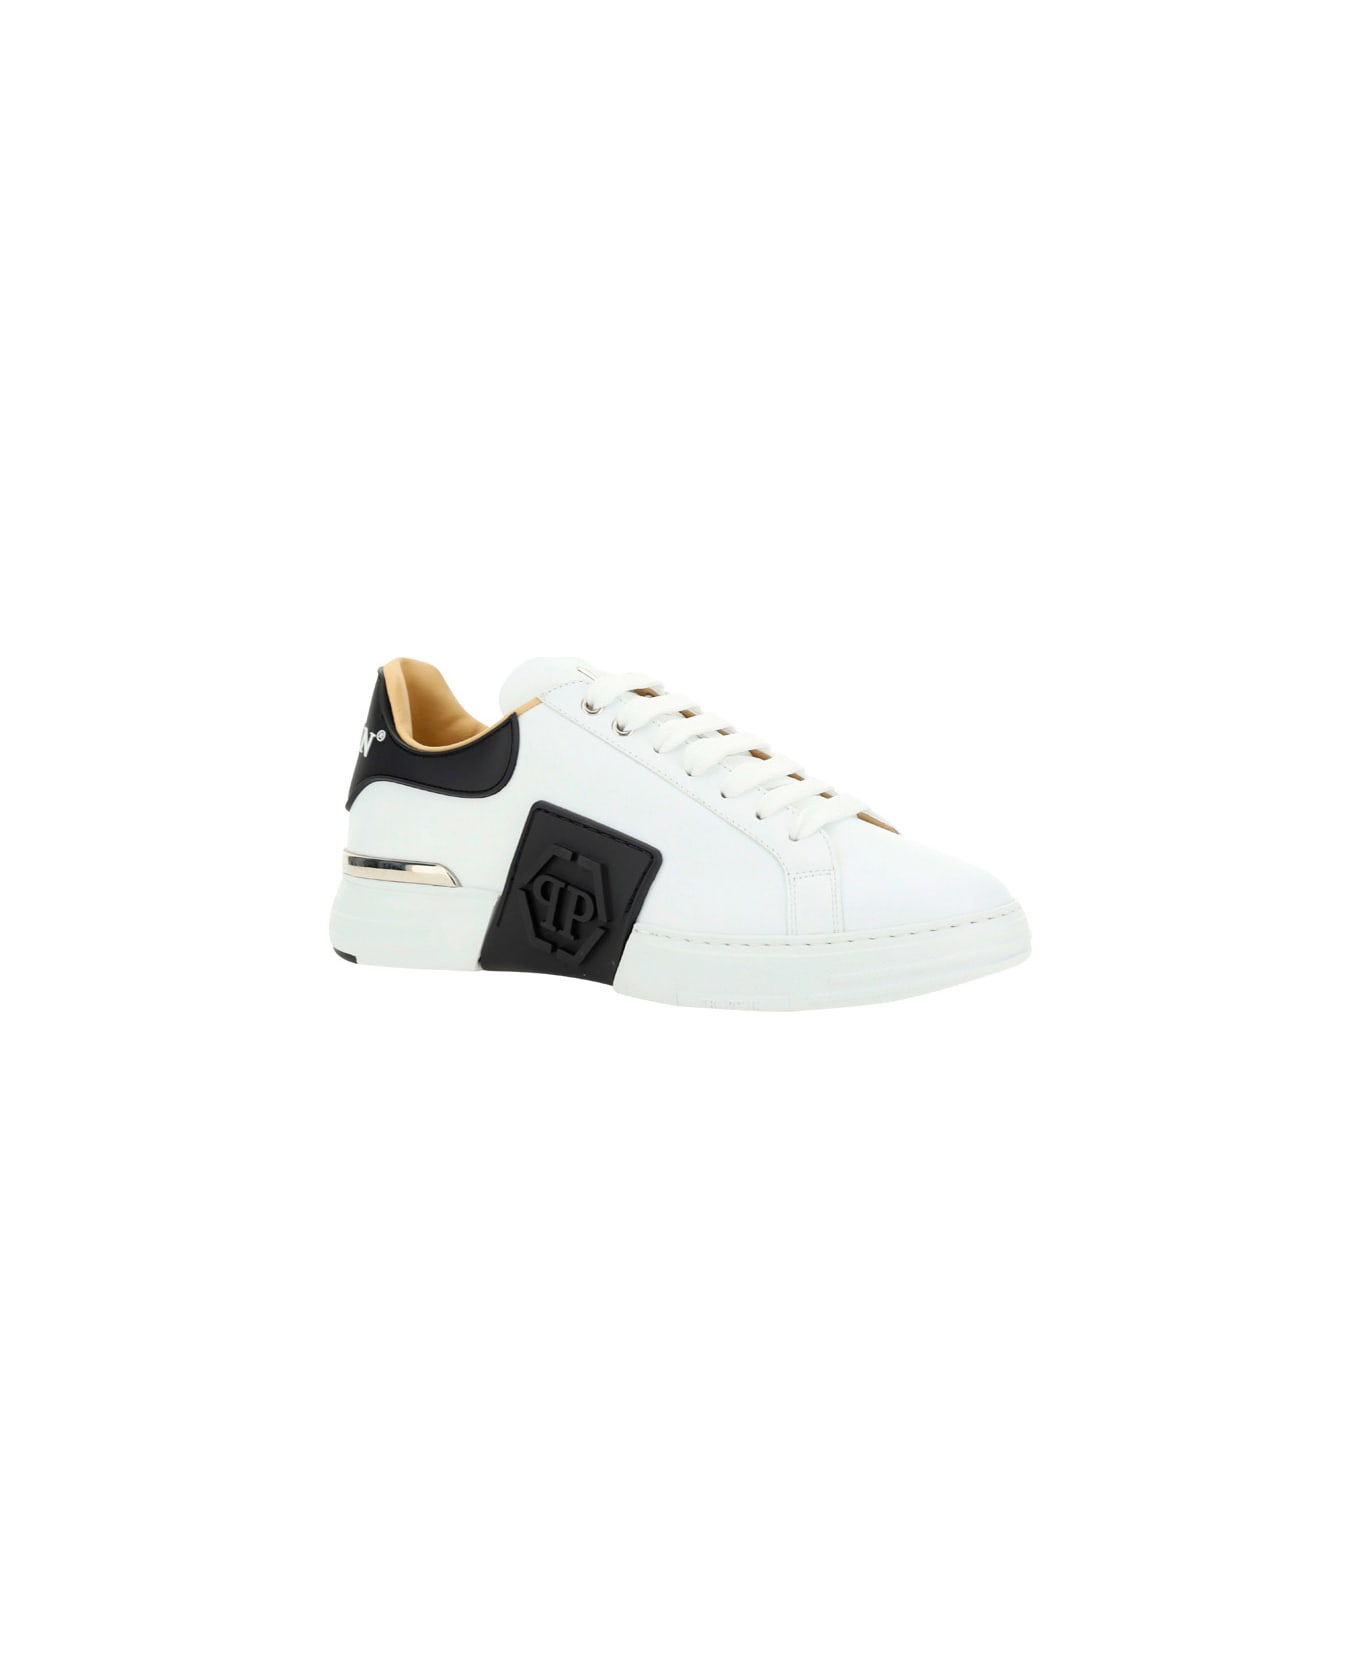 Philipp Plein Hexagon Sneakers - White